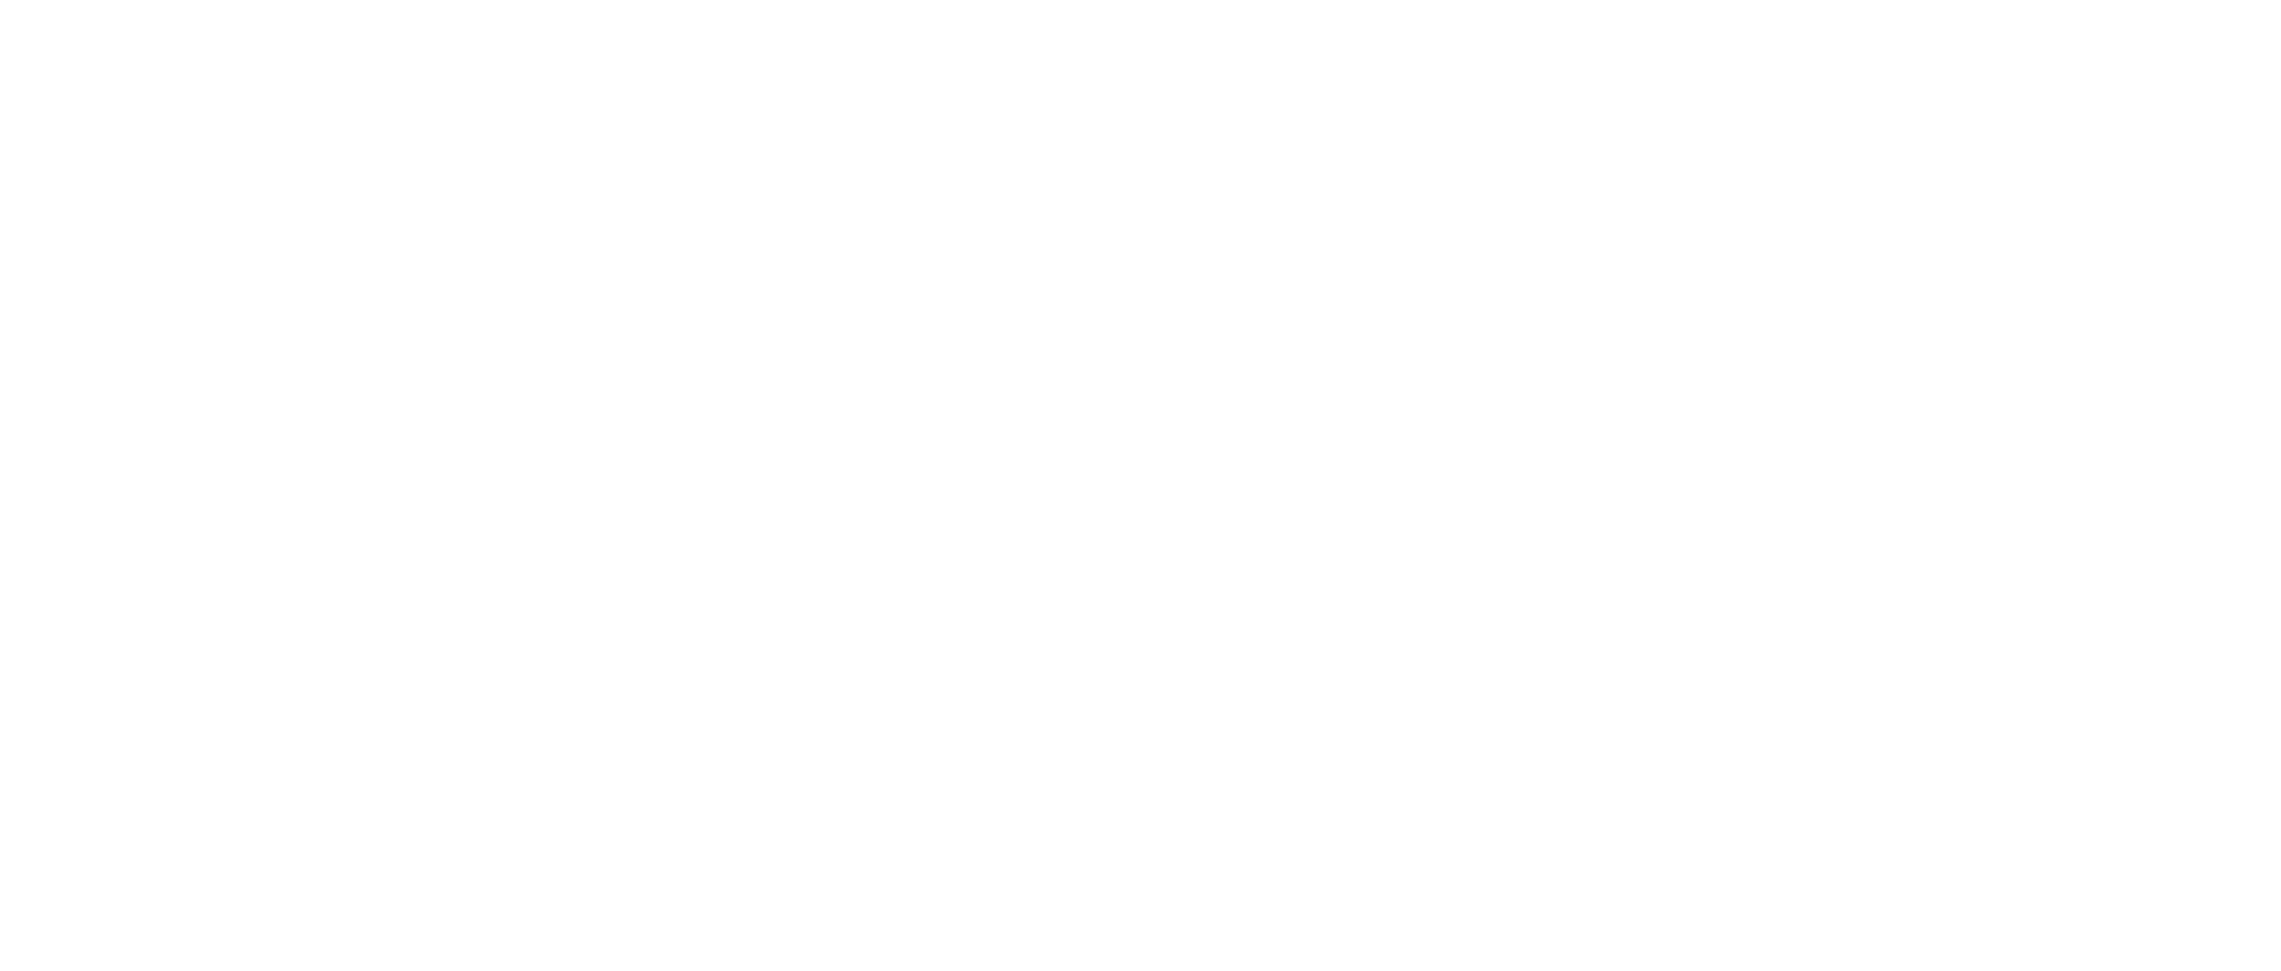 The Houston Arboretum & Nature Center